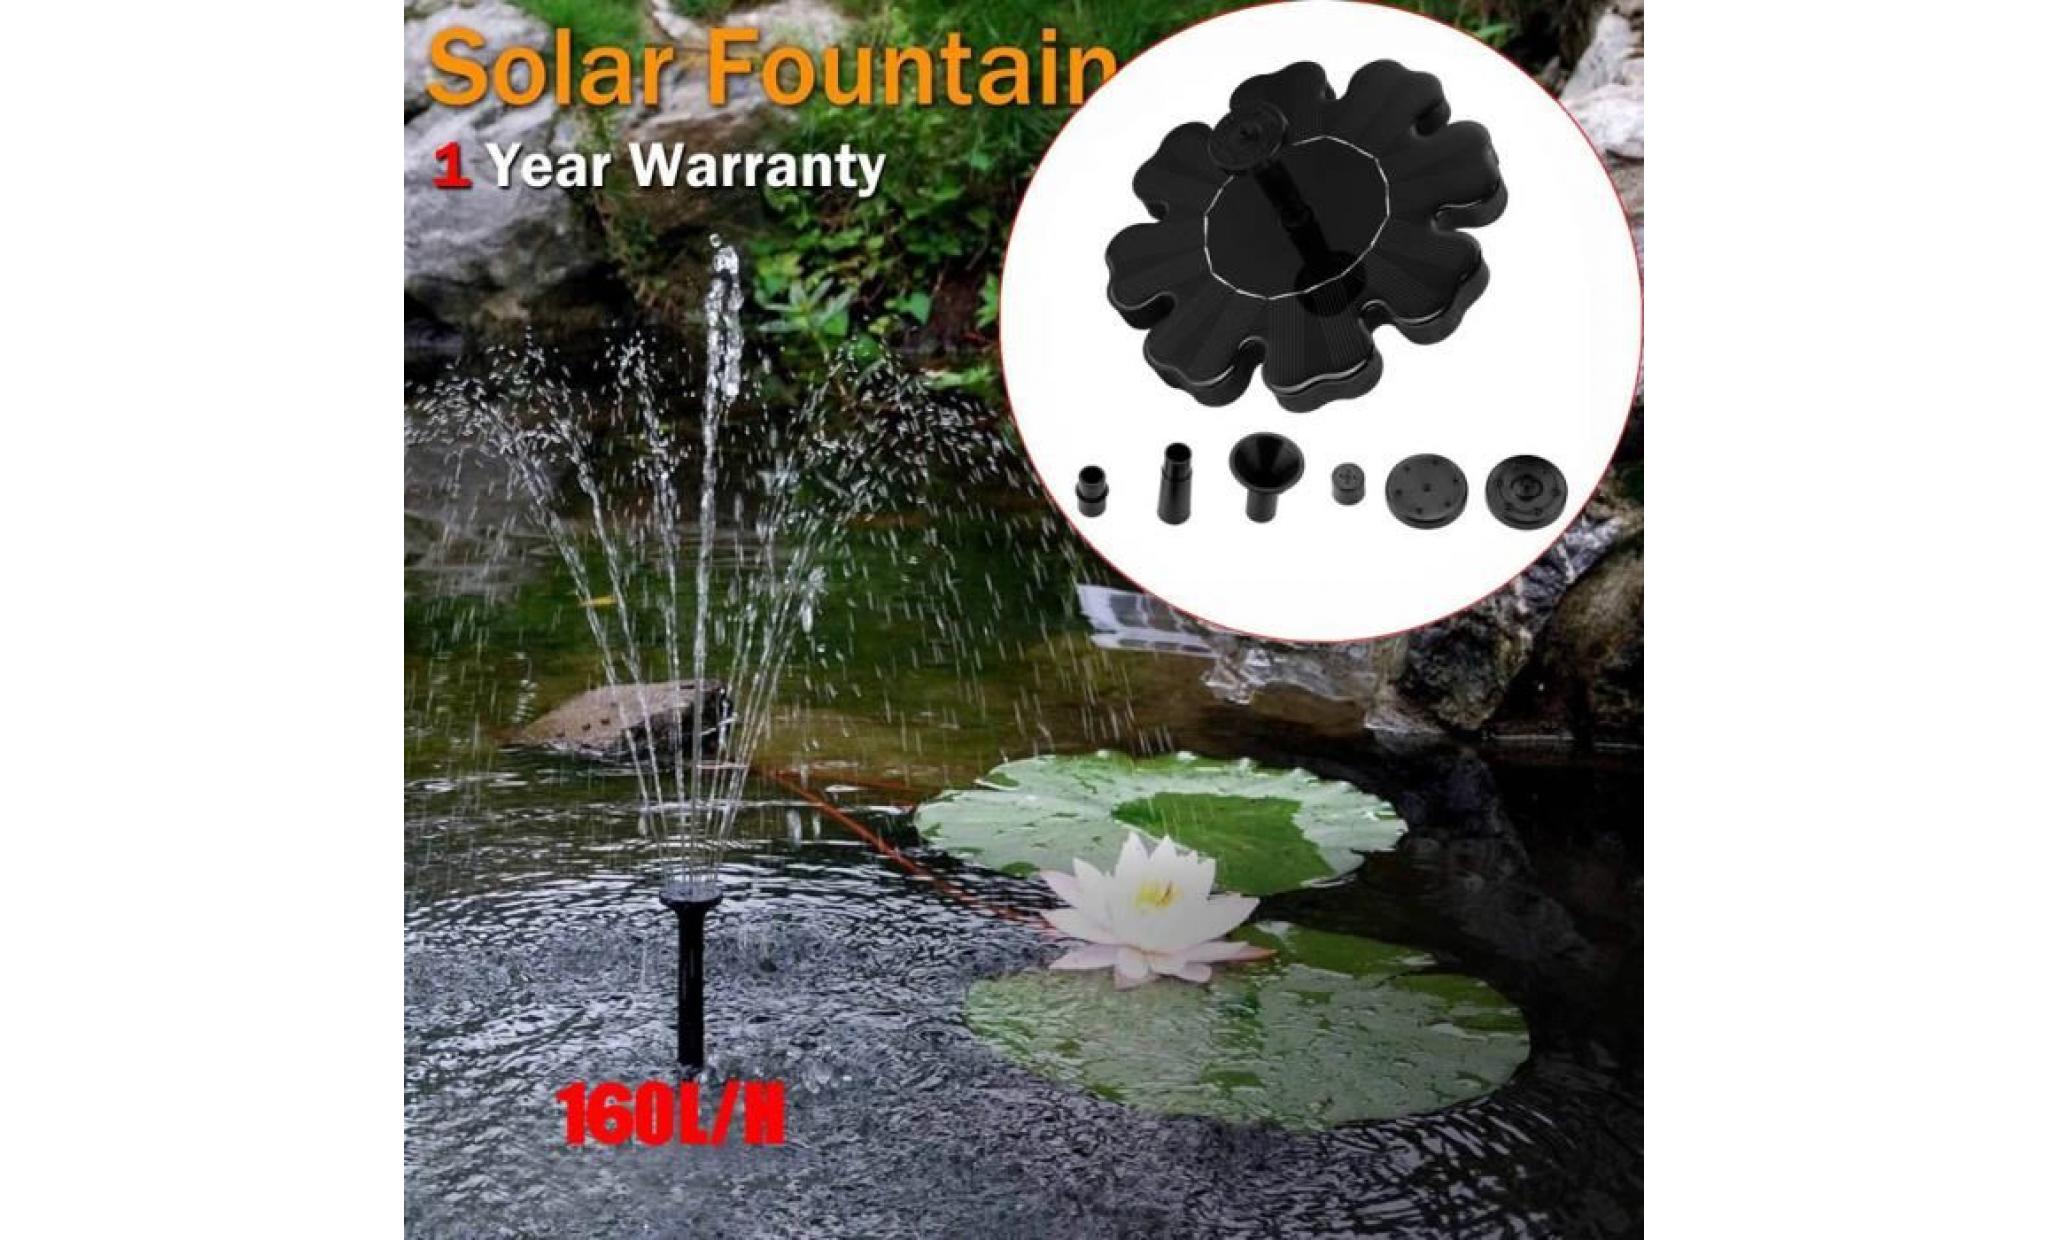 poi@ extérieur à énergie solaire oiseaux bain d'eau fontaine pompe pour piscine, jardin, aquarium noir_24